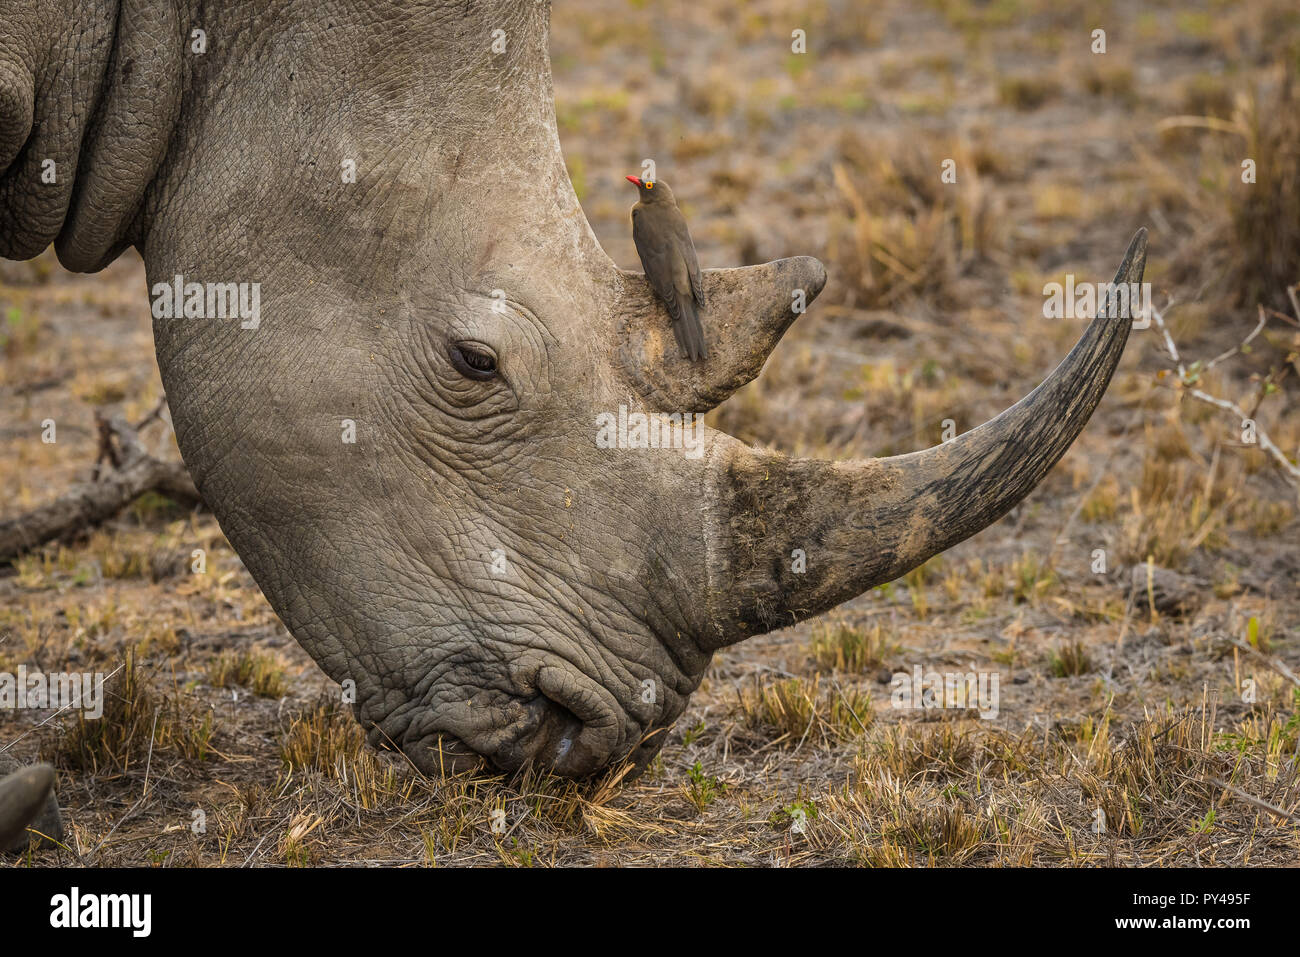 A Rhino and Oxpecker Stock Photo